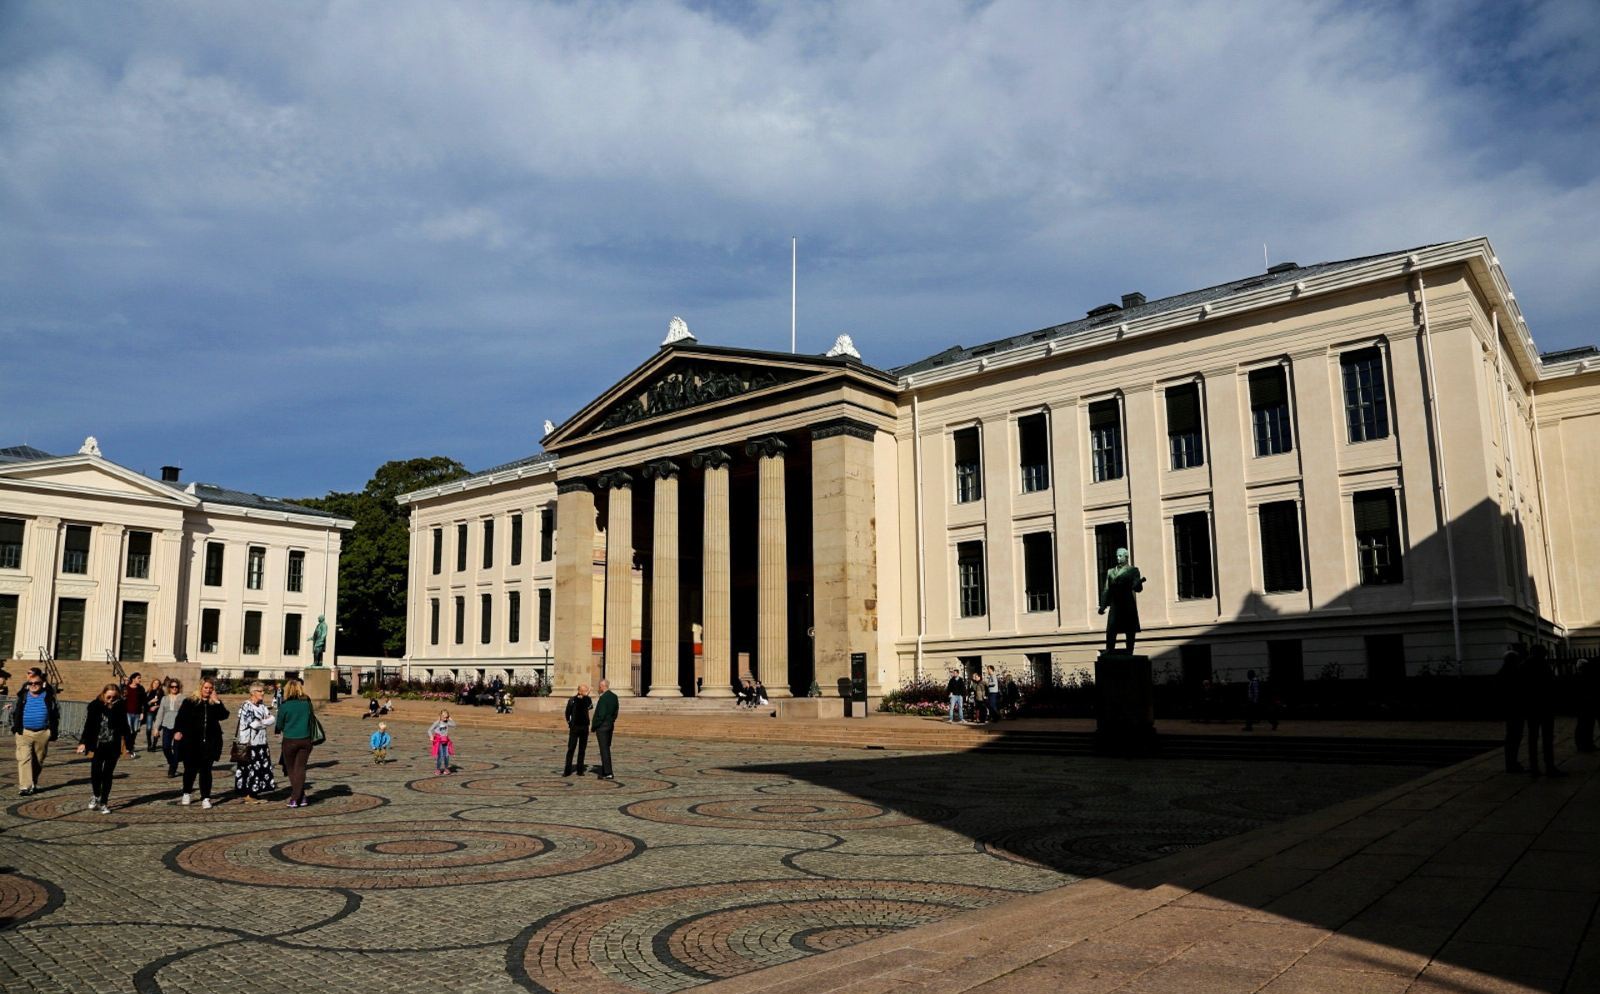 奥斯陆大学,位于奥斯陆市区,是挪威最著名的高等学府,历史悠久,这次是